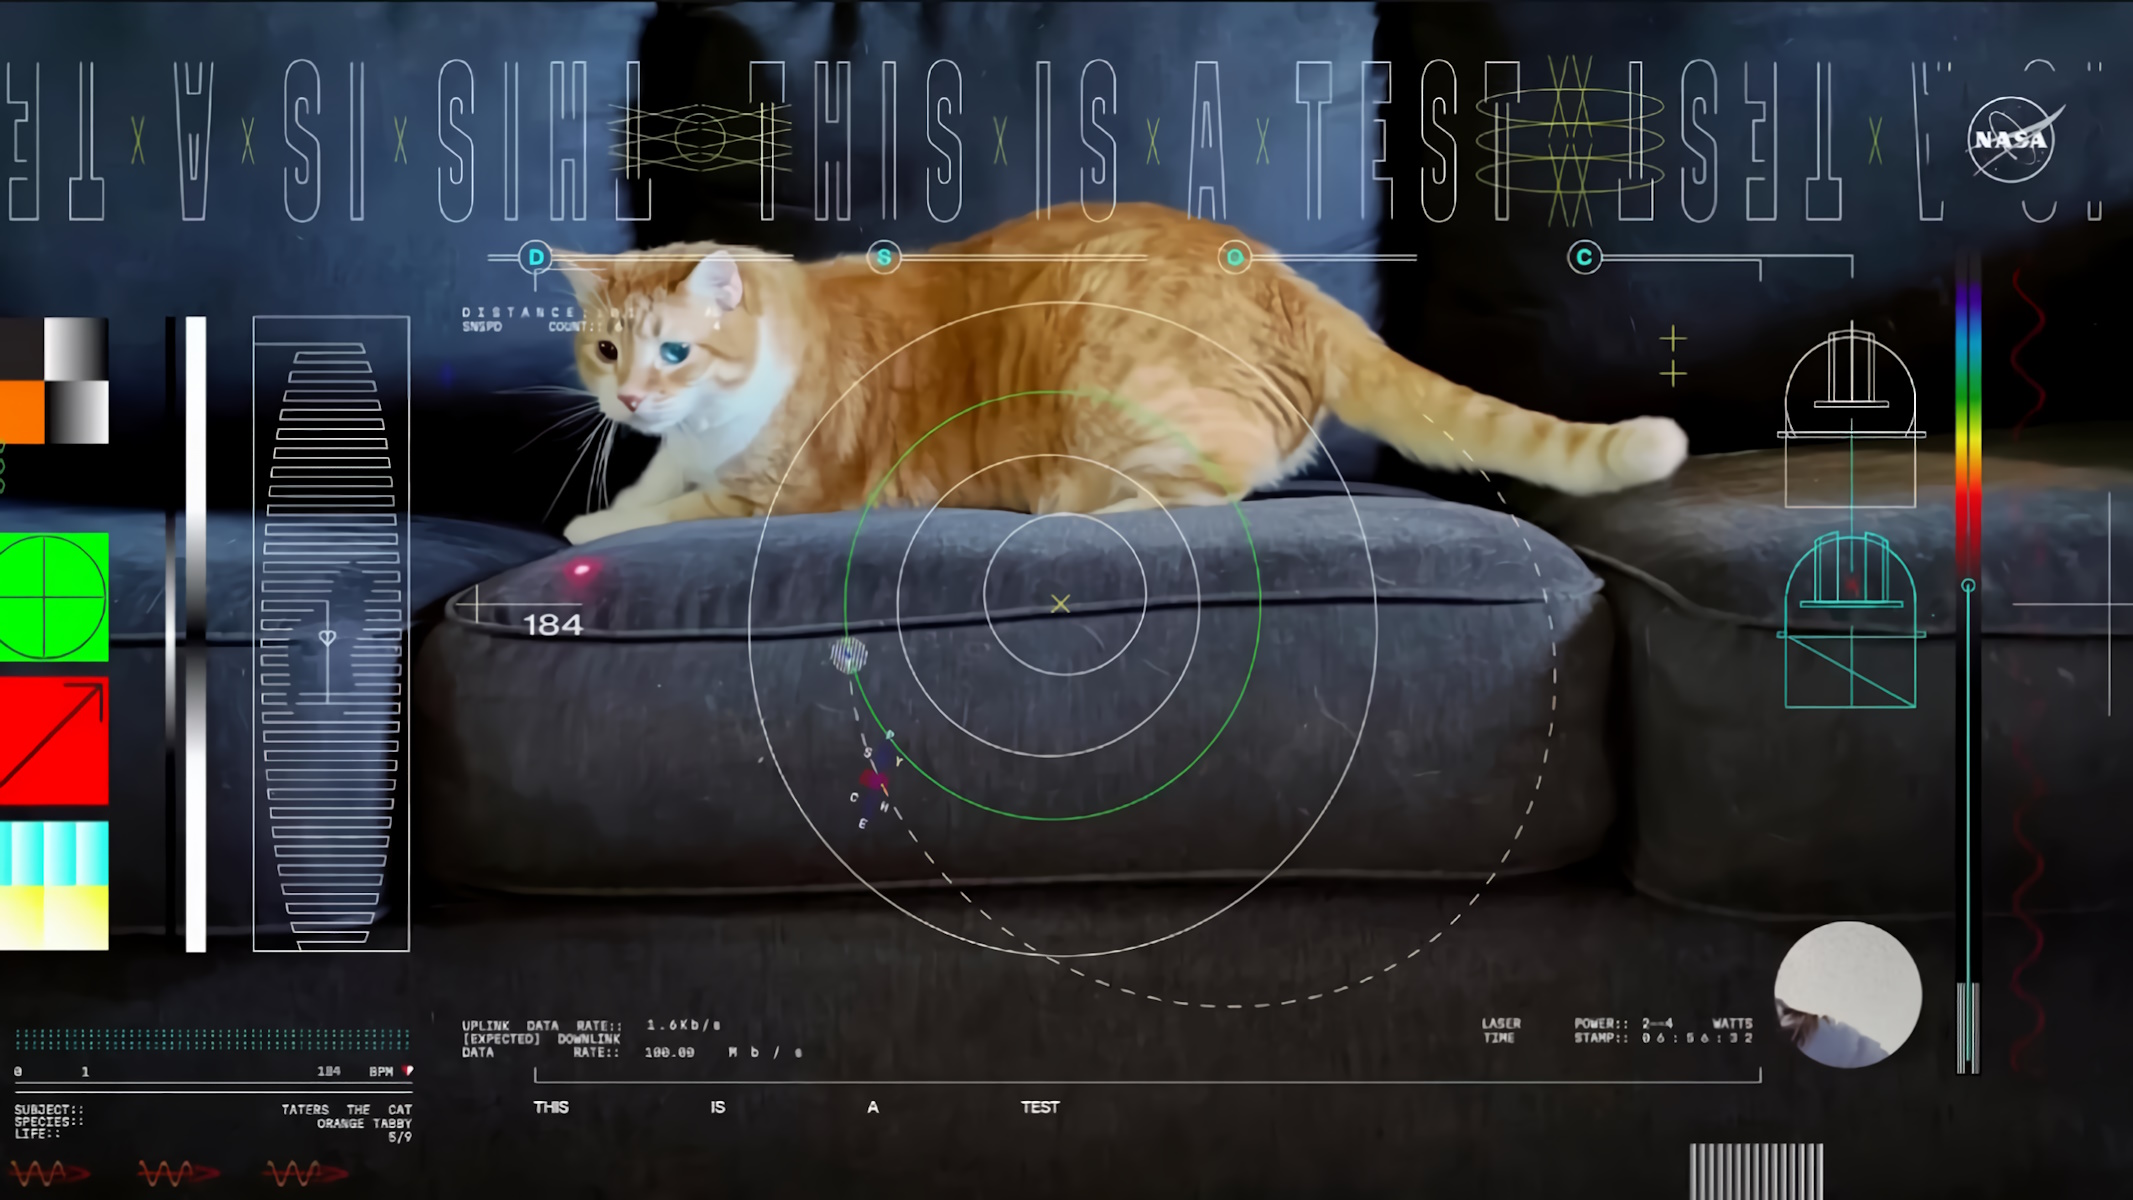 NASA Streaming video del gatto Taters che gioca con un laser